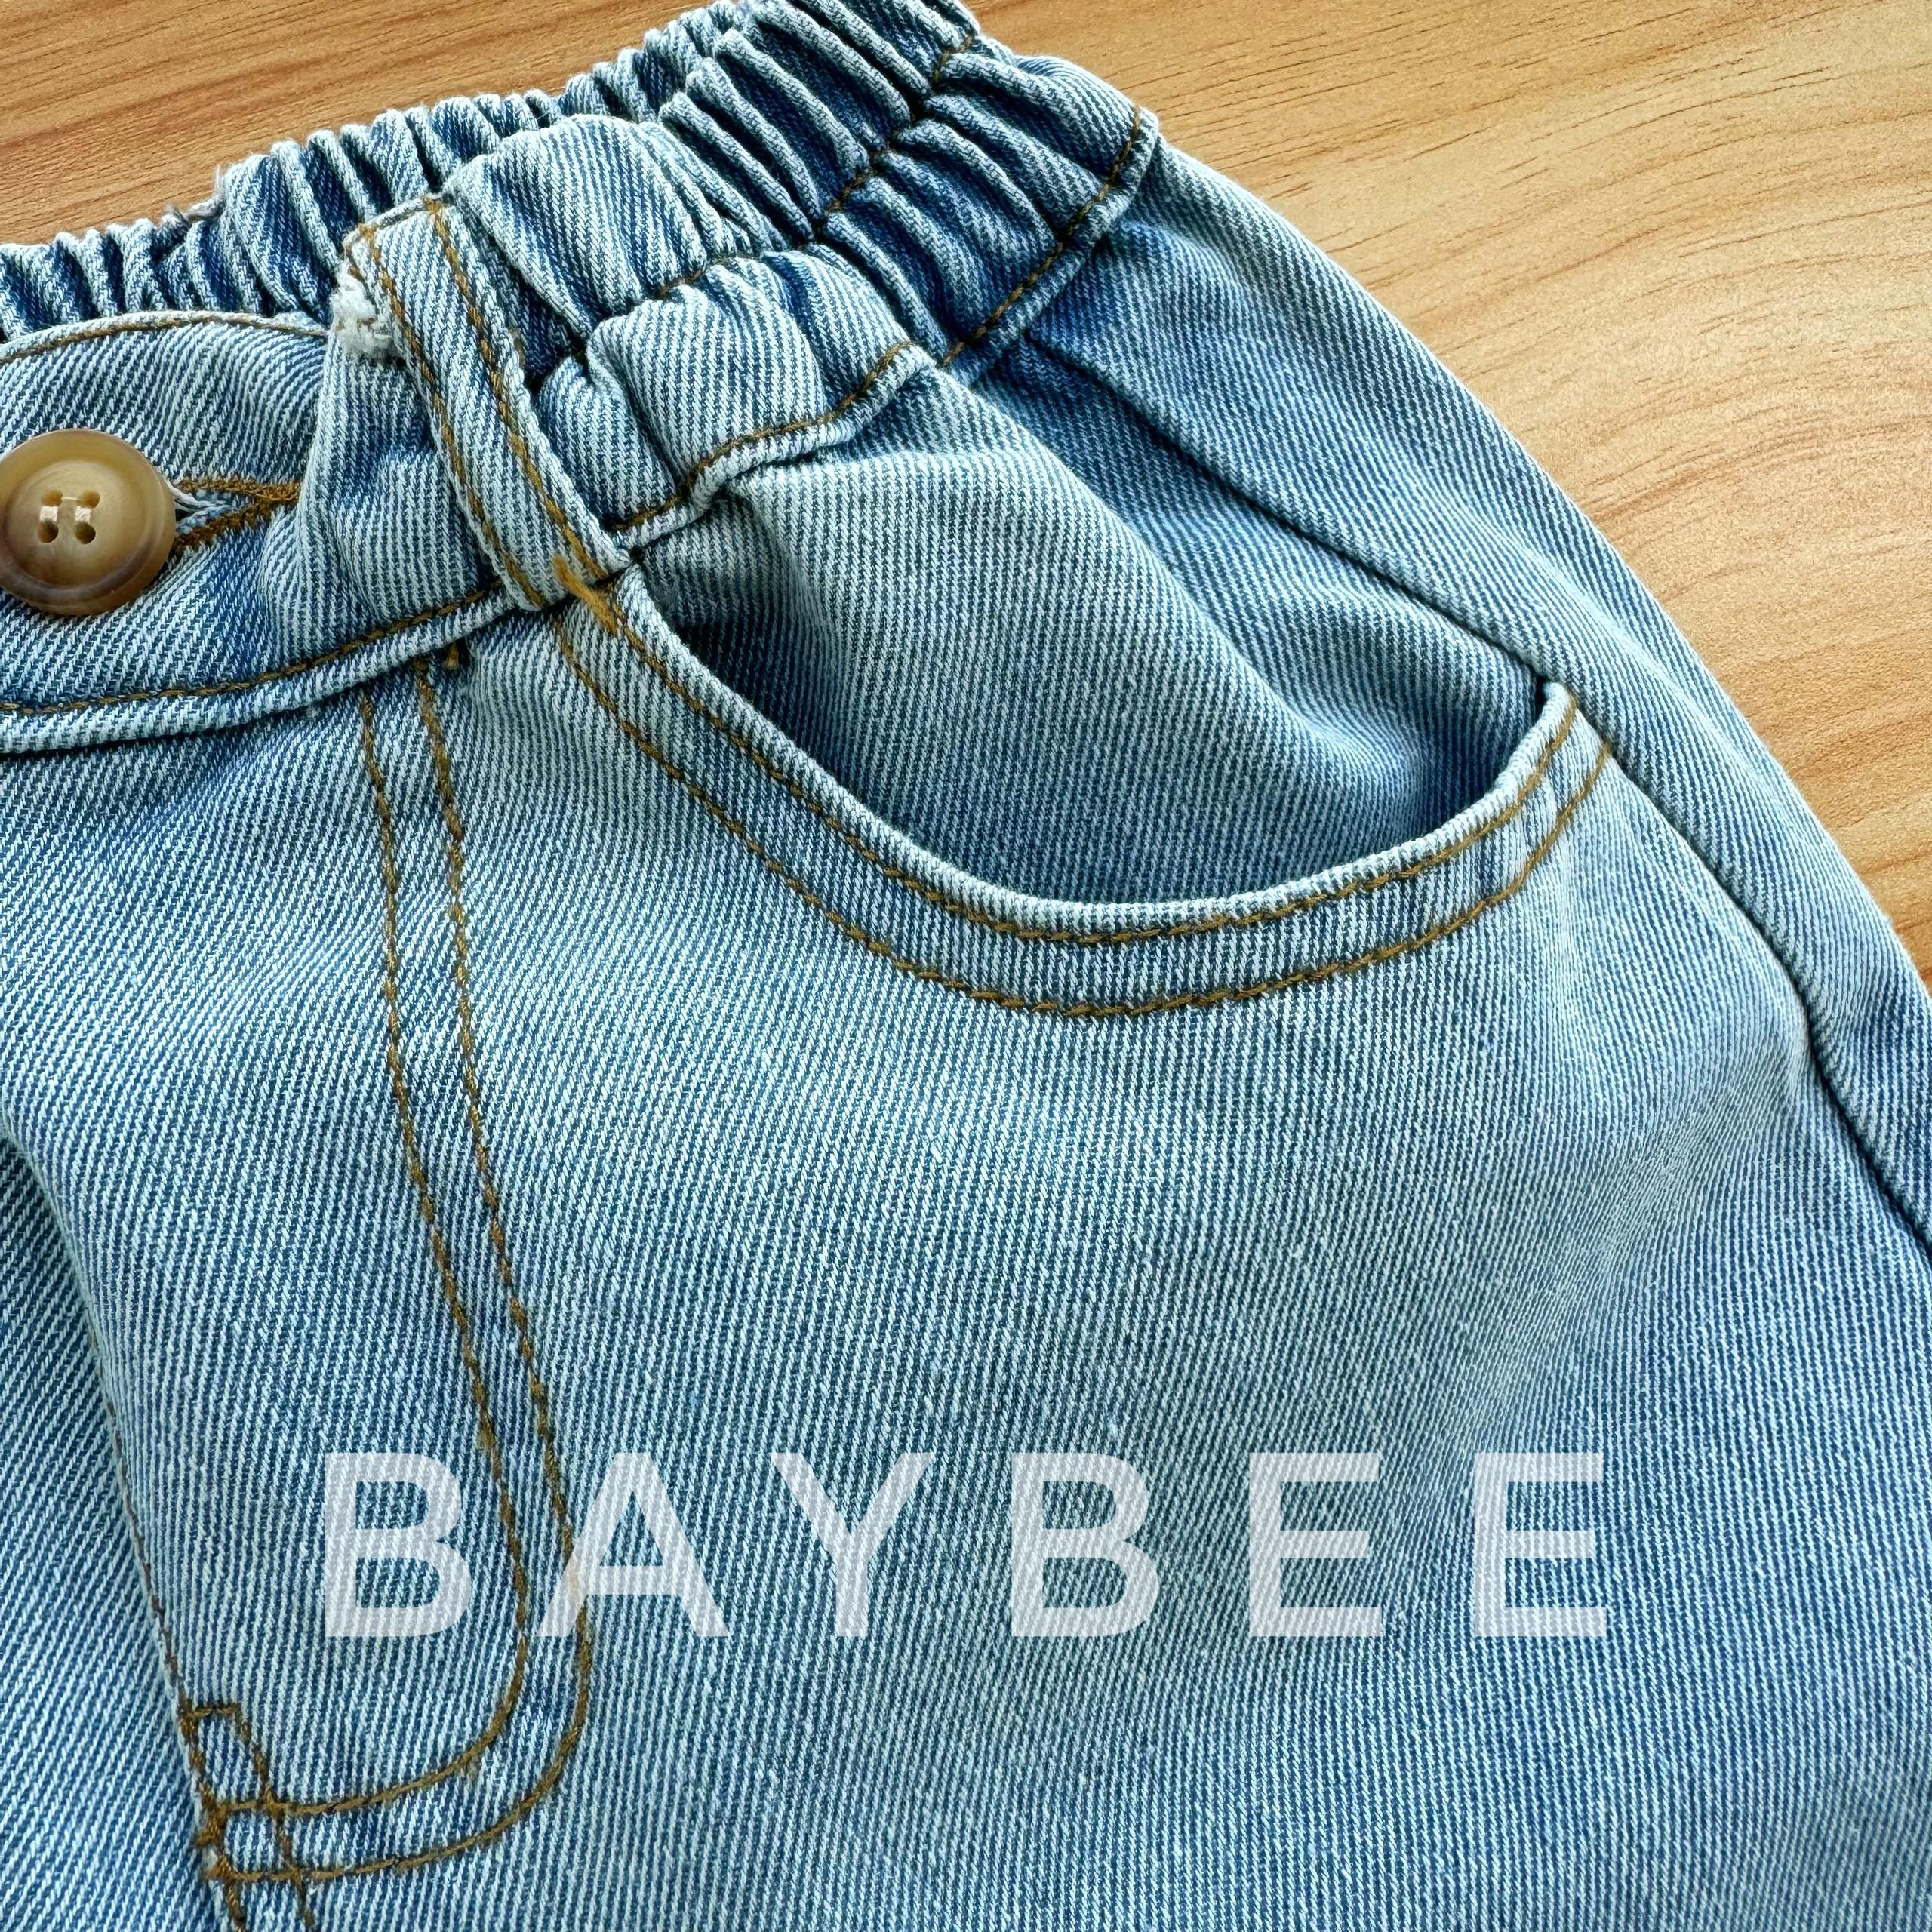 新作入荷新作Babybee button design denim salopette サロペット・オーバーオール・オールインワン